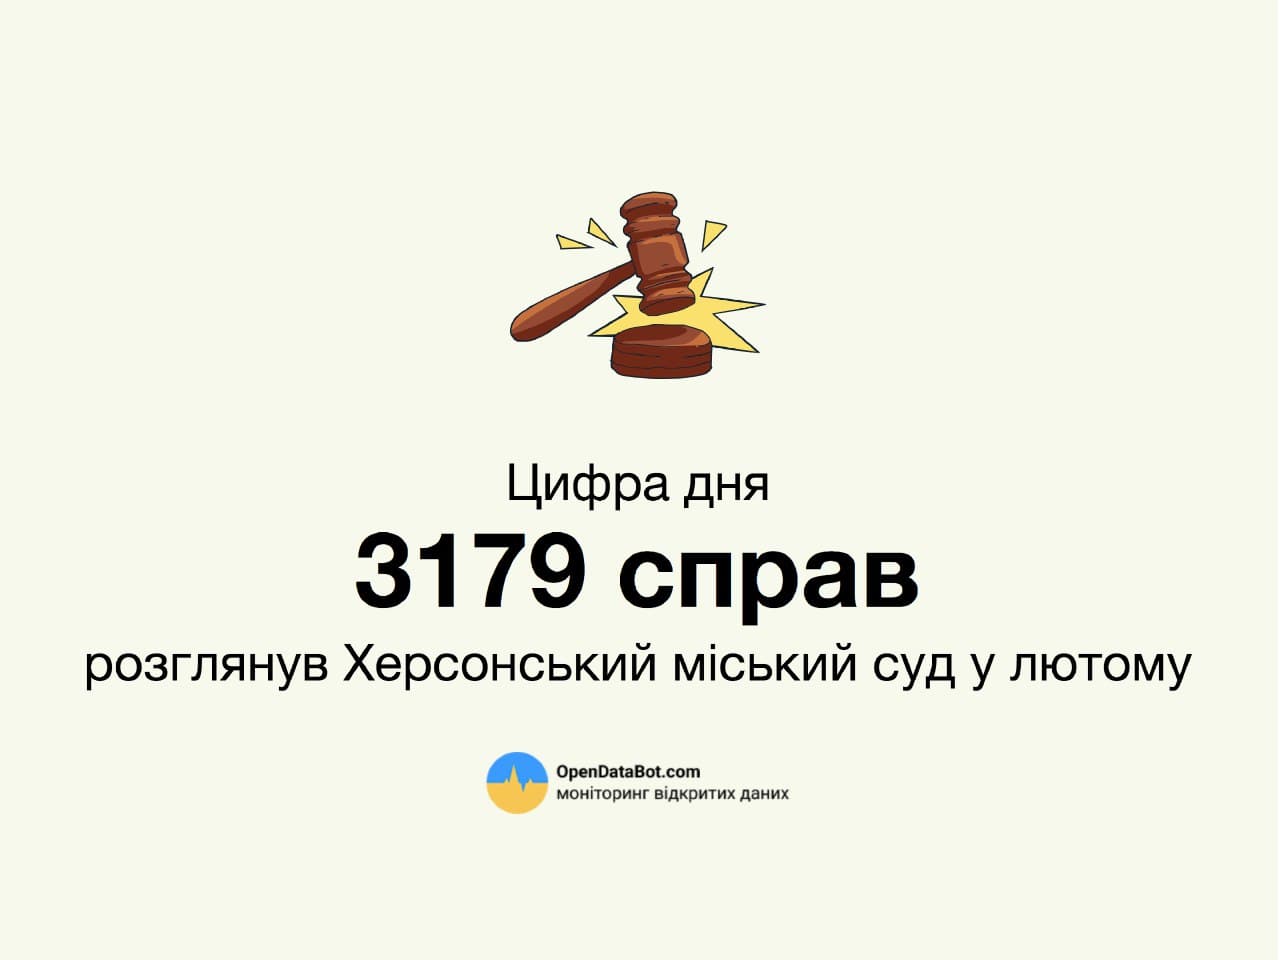 Як працює судова система в Україні